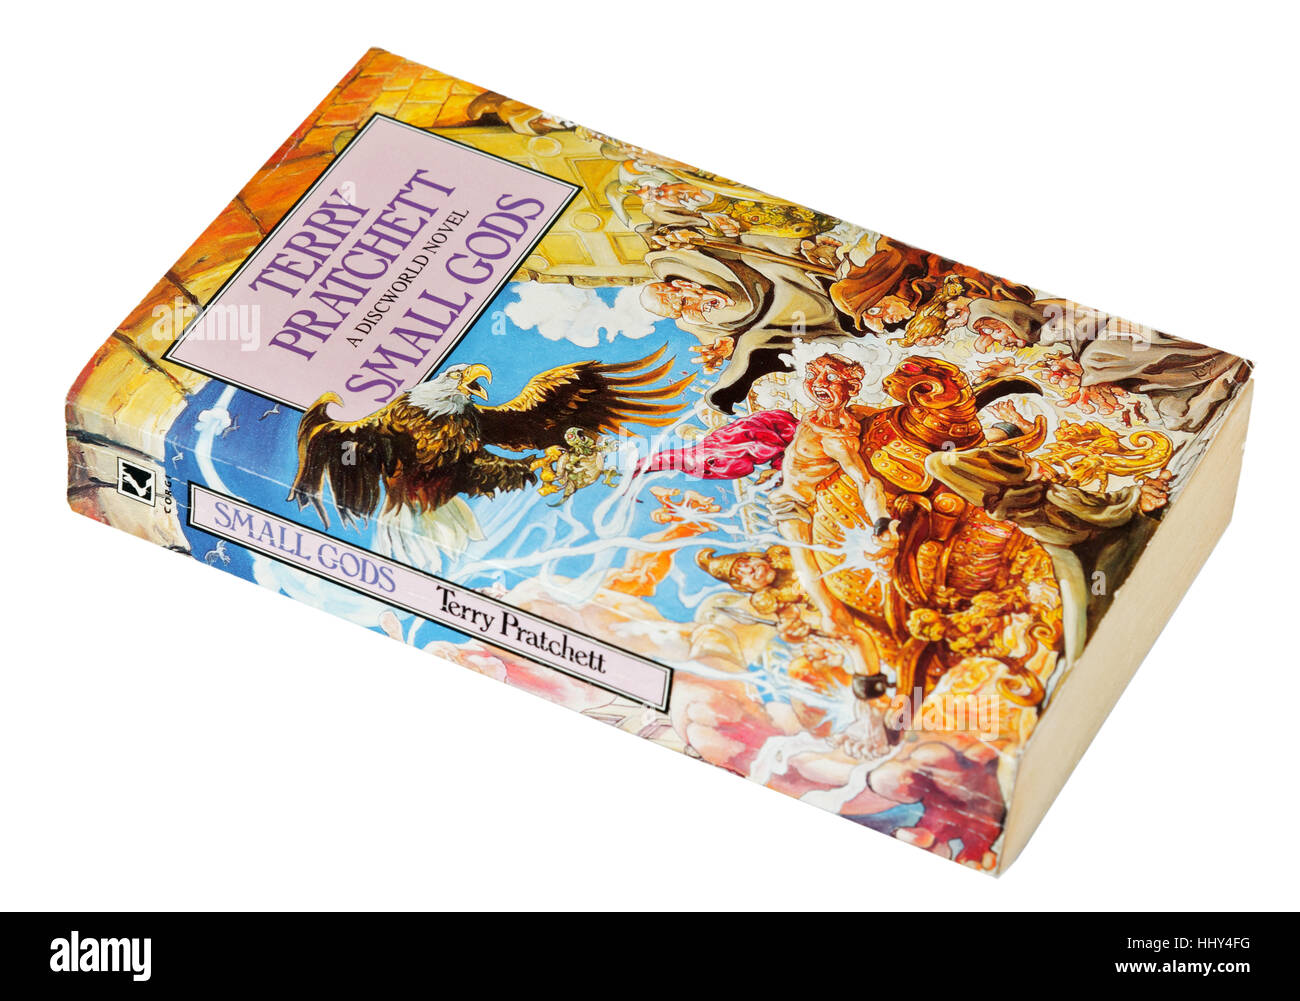 Piccoli dèi; un romanzo Discworld di Terry Pratchett Foto Stock